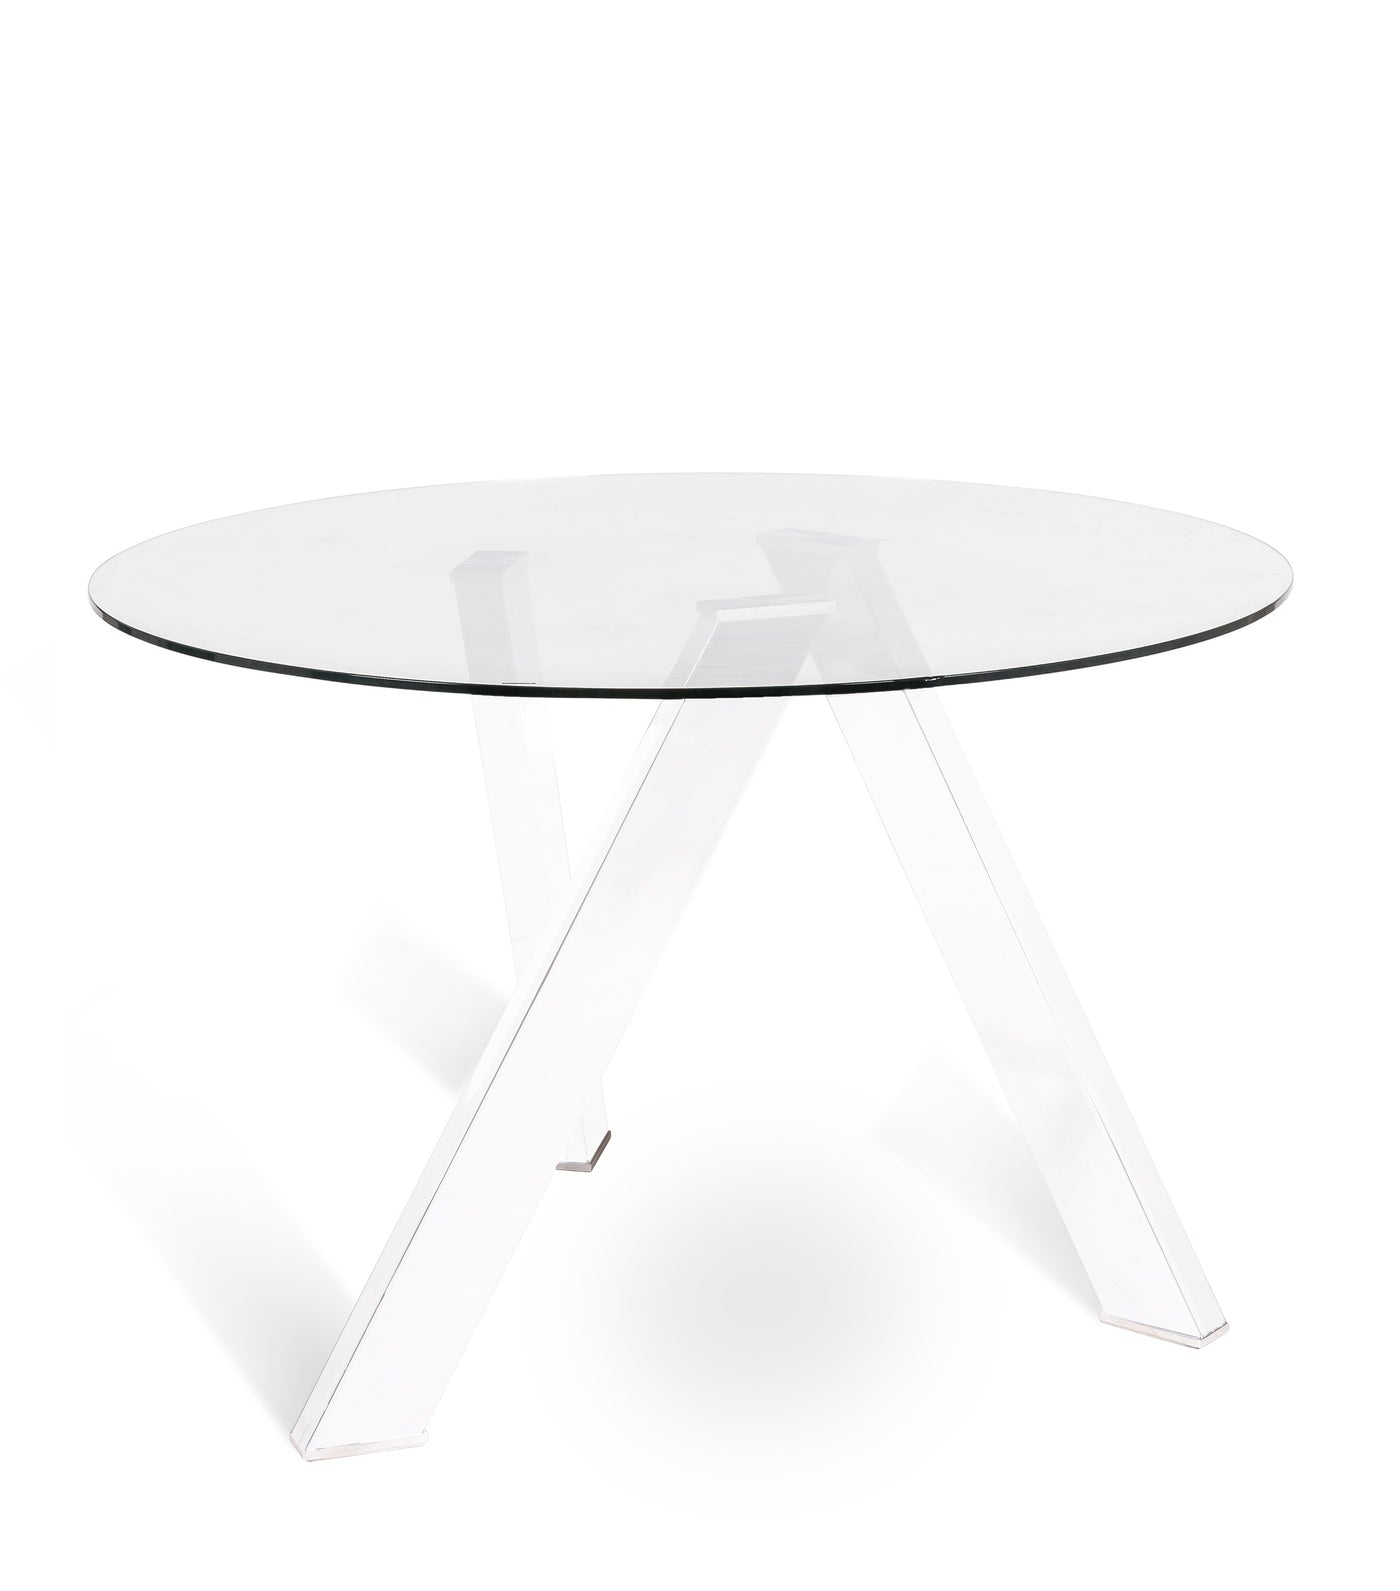 ETTRIAN table white